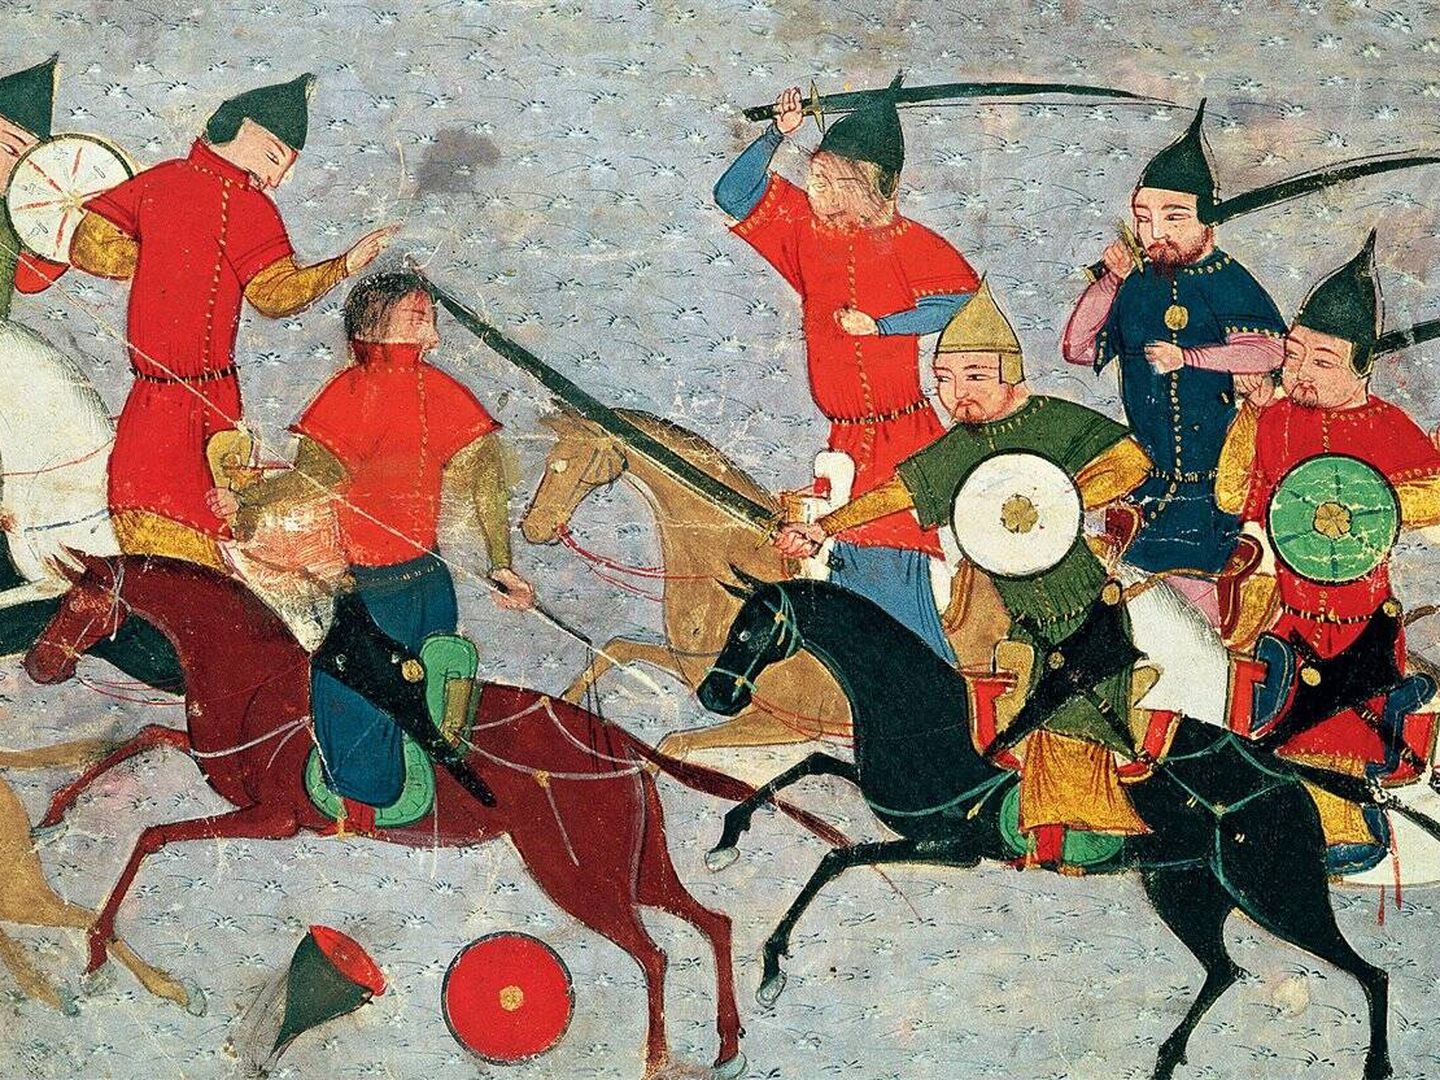 El soberano mongol pone en fuga a sus enemigos. Escena del Compendio de crónicas, de Rashid al-Din. Miniatura del siglo XIV.